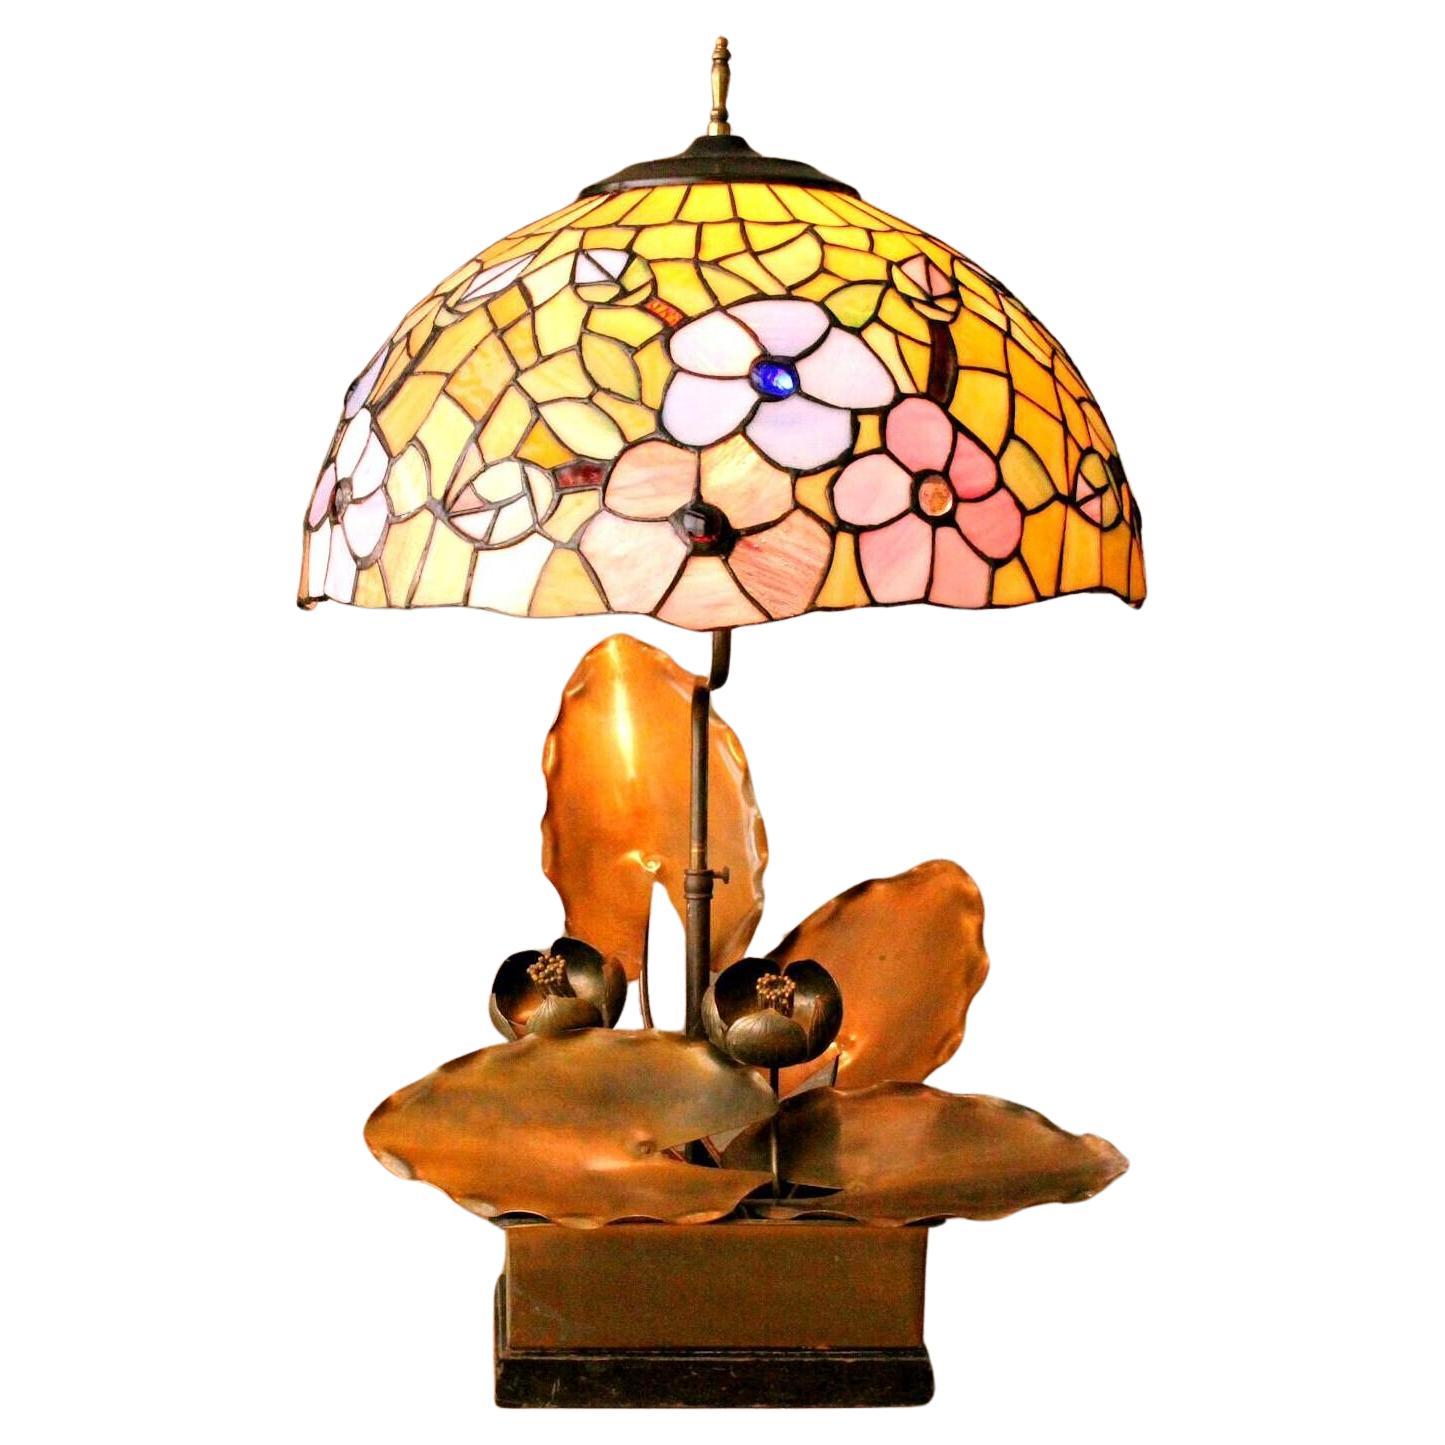 Magificent 1920s Art Nouveau Sculptural Lotus Lampe aus Metall. Kamed Kunstglas